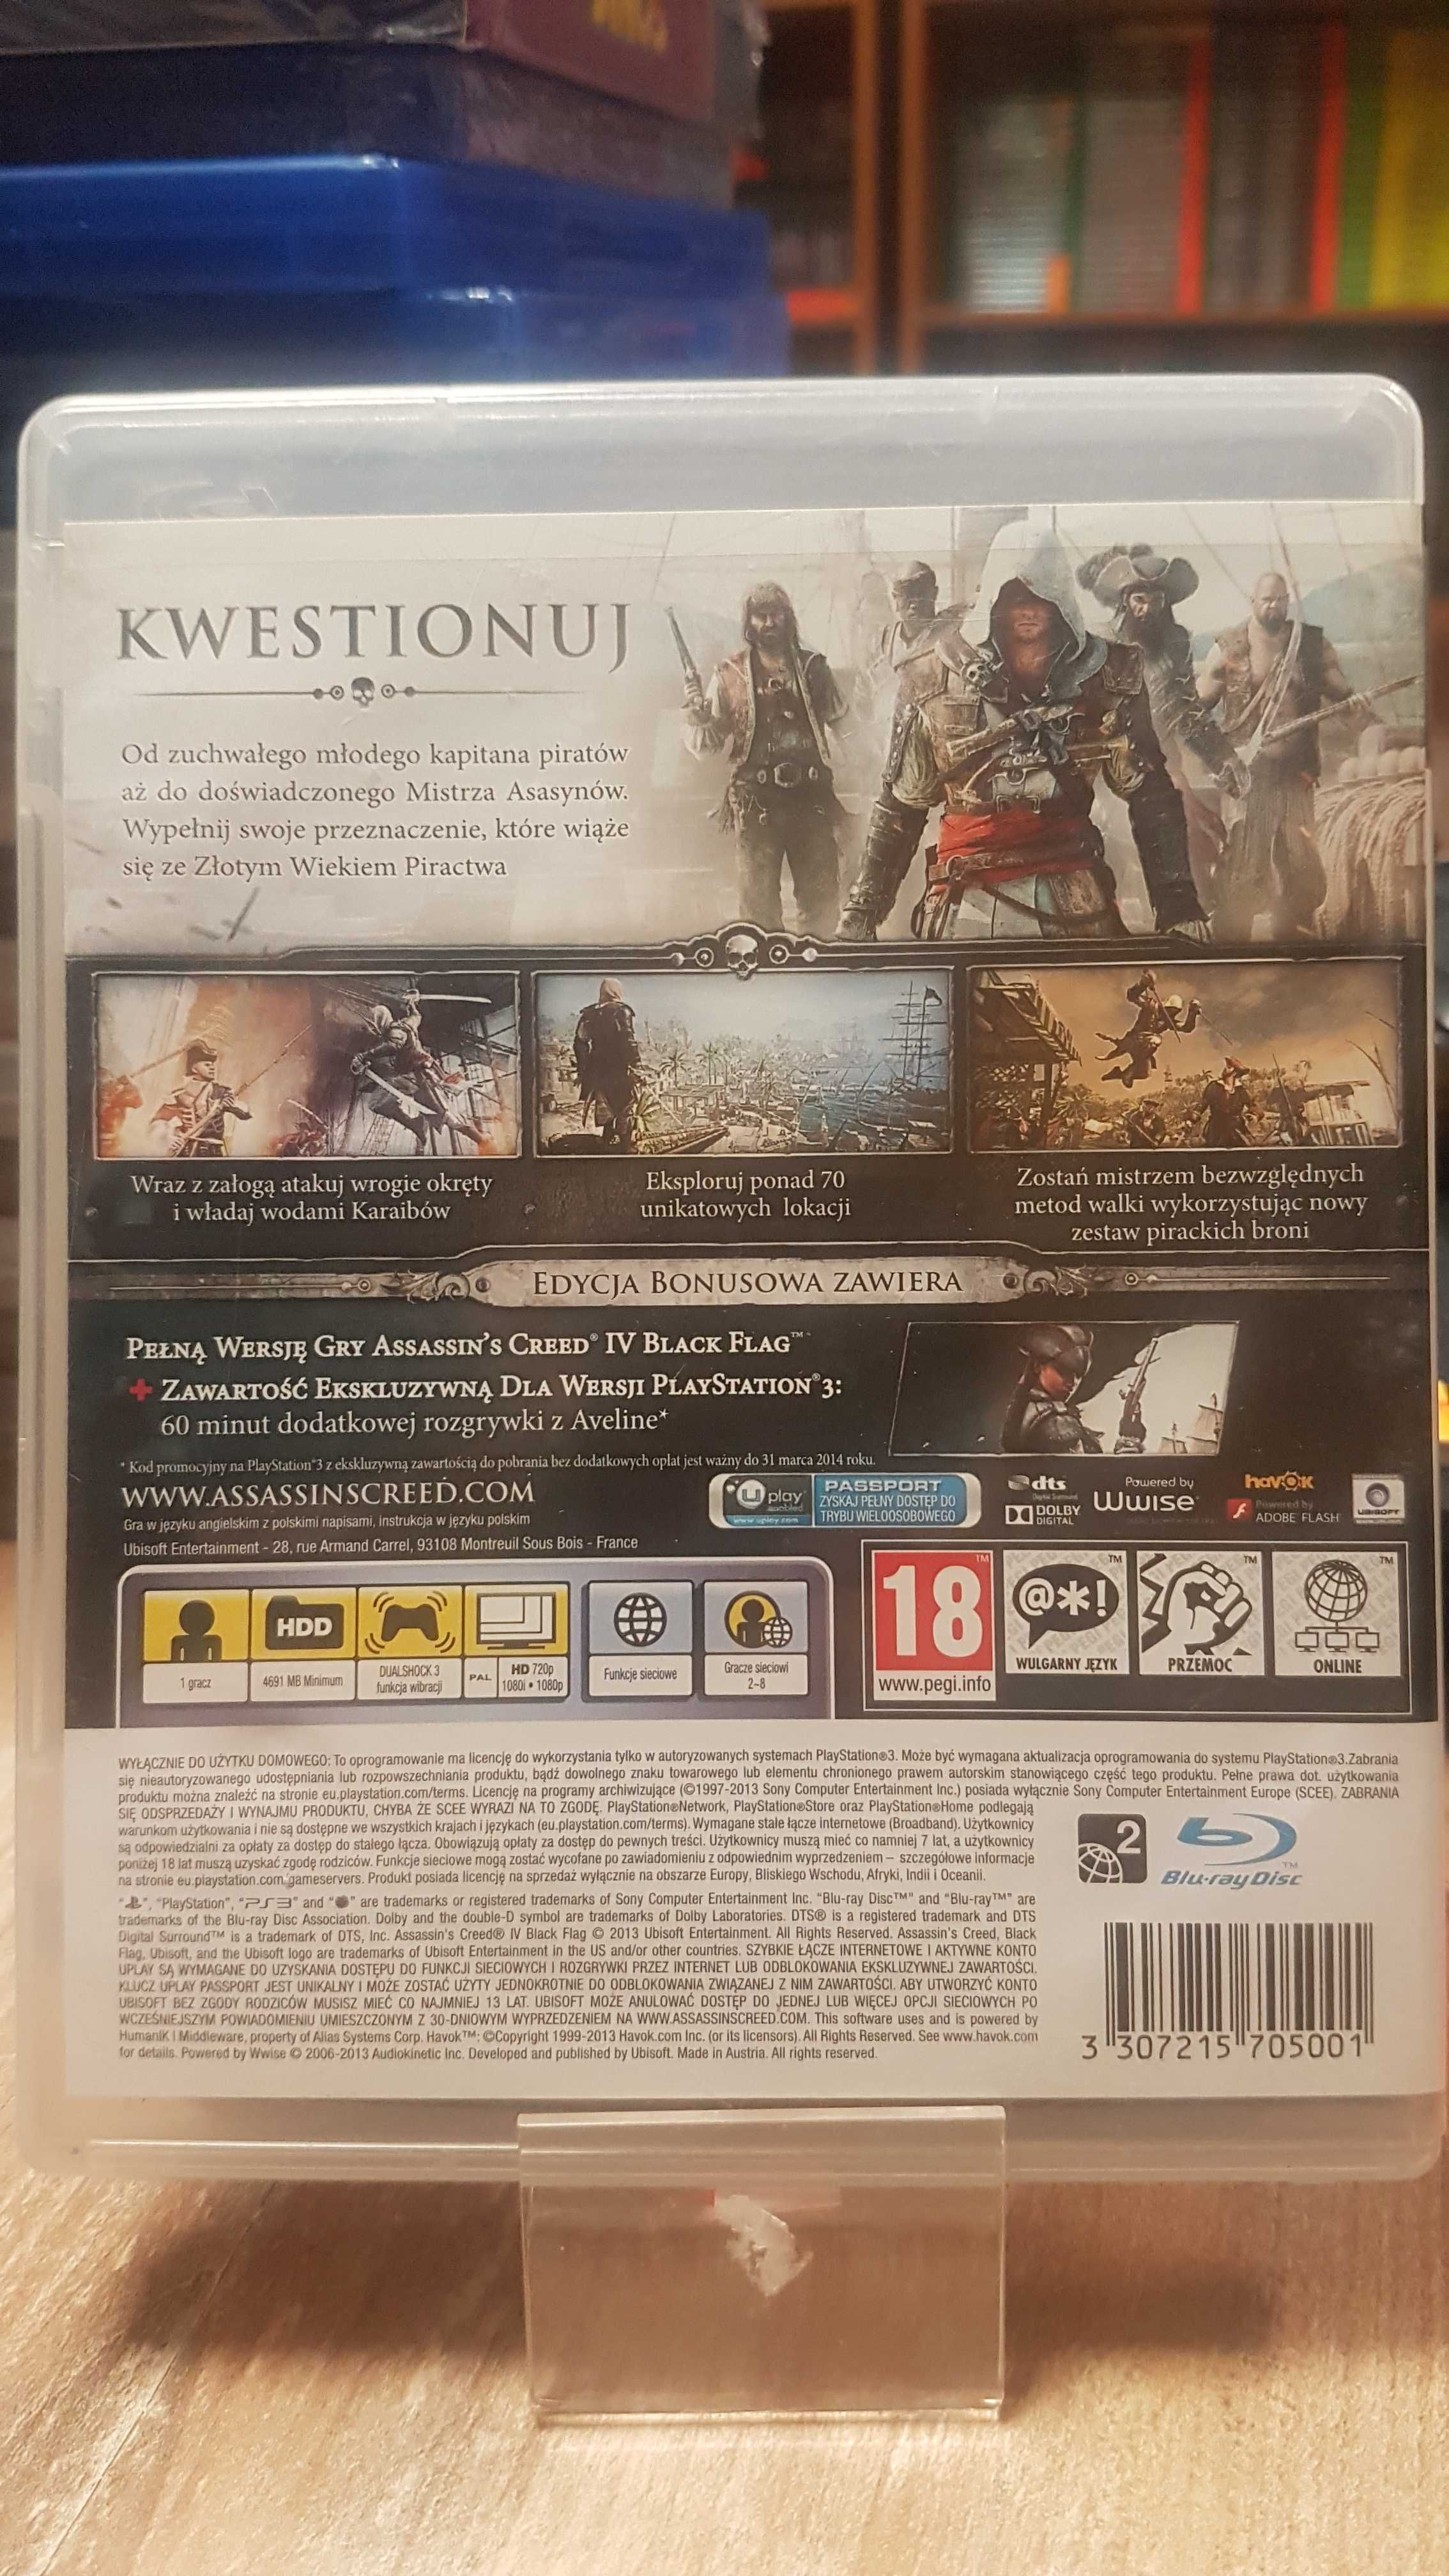 Assassin's Creed IV: Black Flag PS3 Sklep Wysyłka Wymiana